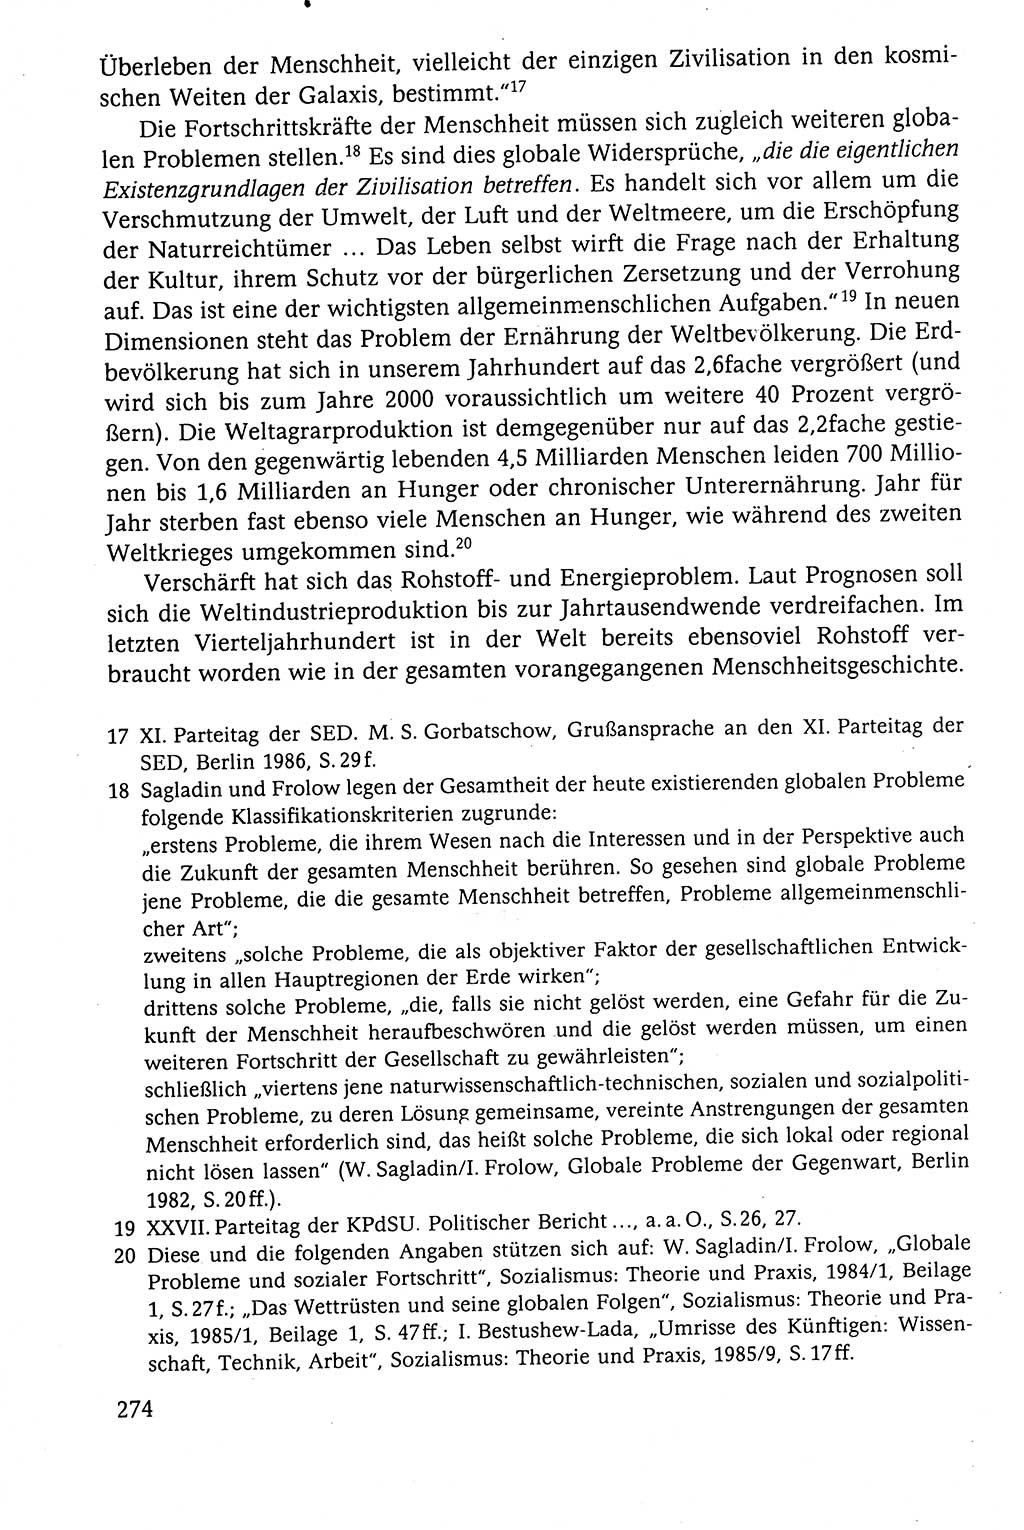 Der Staat im politischen System der DDR (Deutsche Demokratische Republik) 1986, Seite 274 (St. pol. Sys. DDR 1986, S. 274)